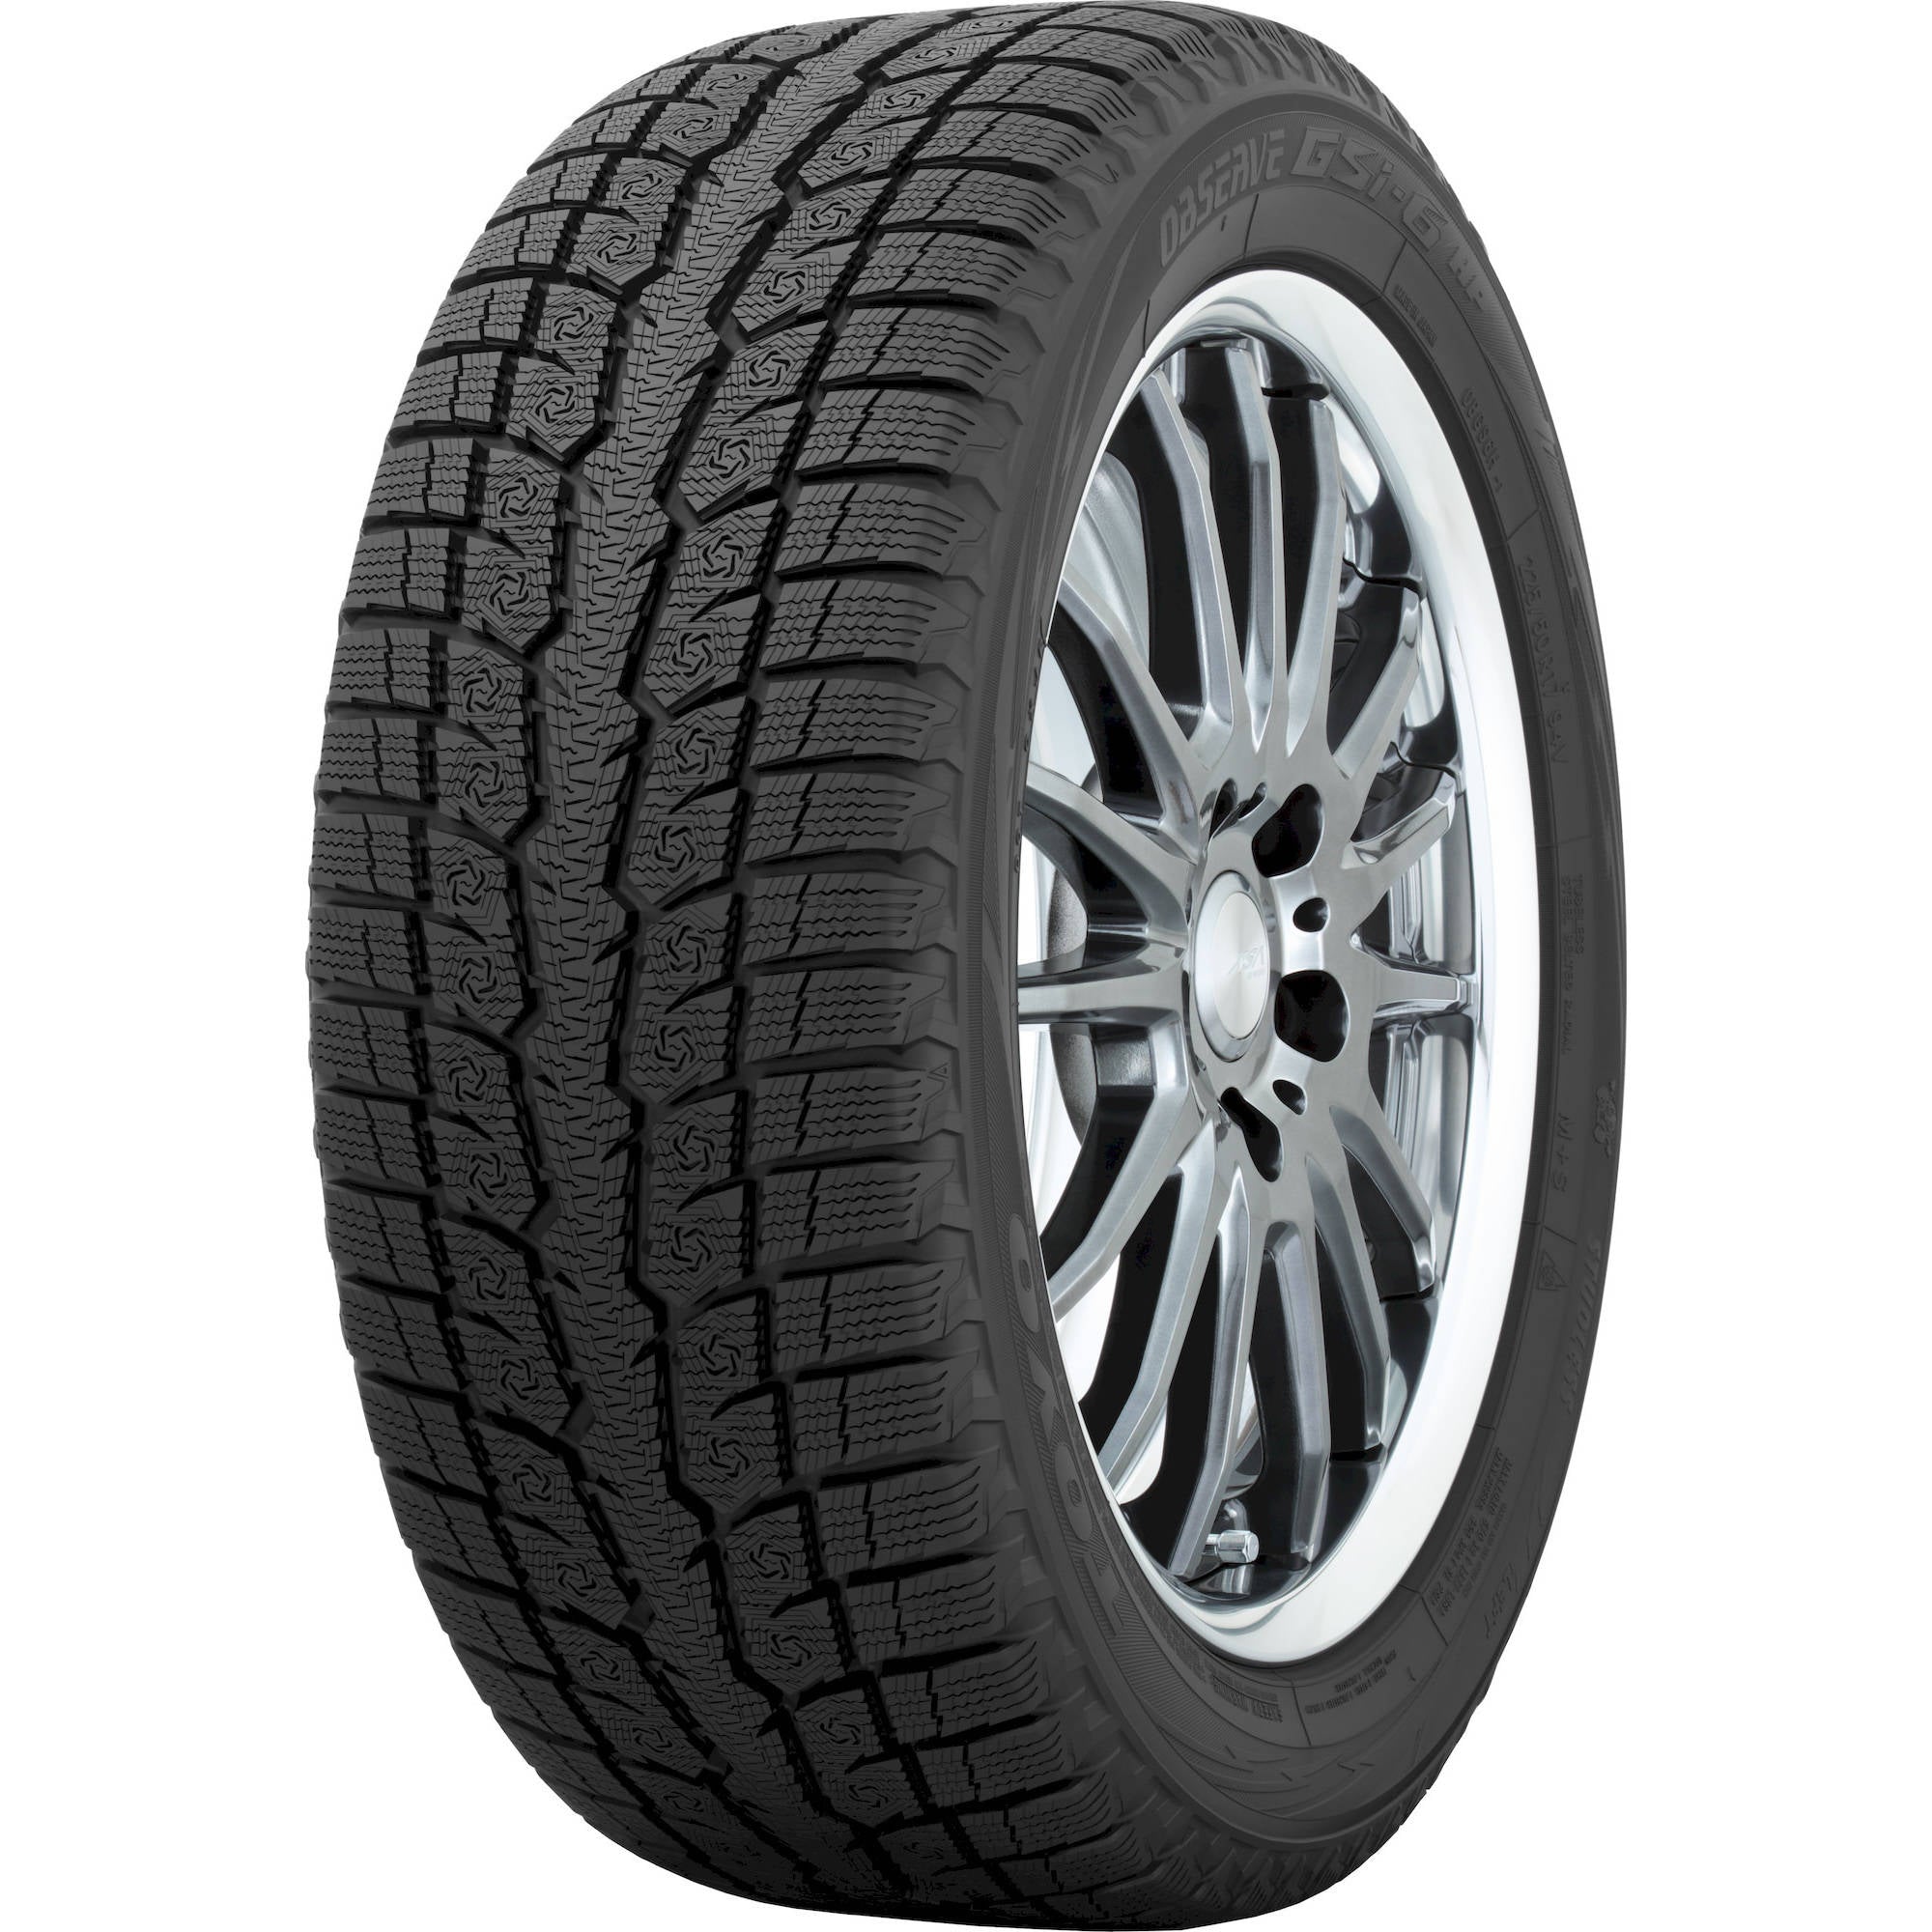 TOYO TIRES OBSERVE GSI-6 235/70R16 (29X9.3R 16) Tires